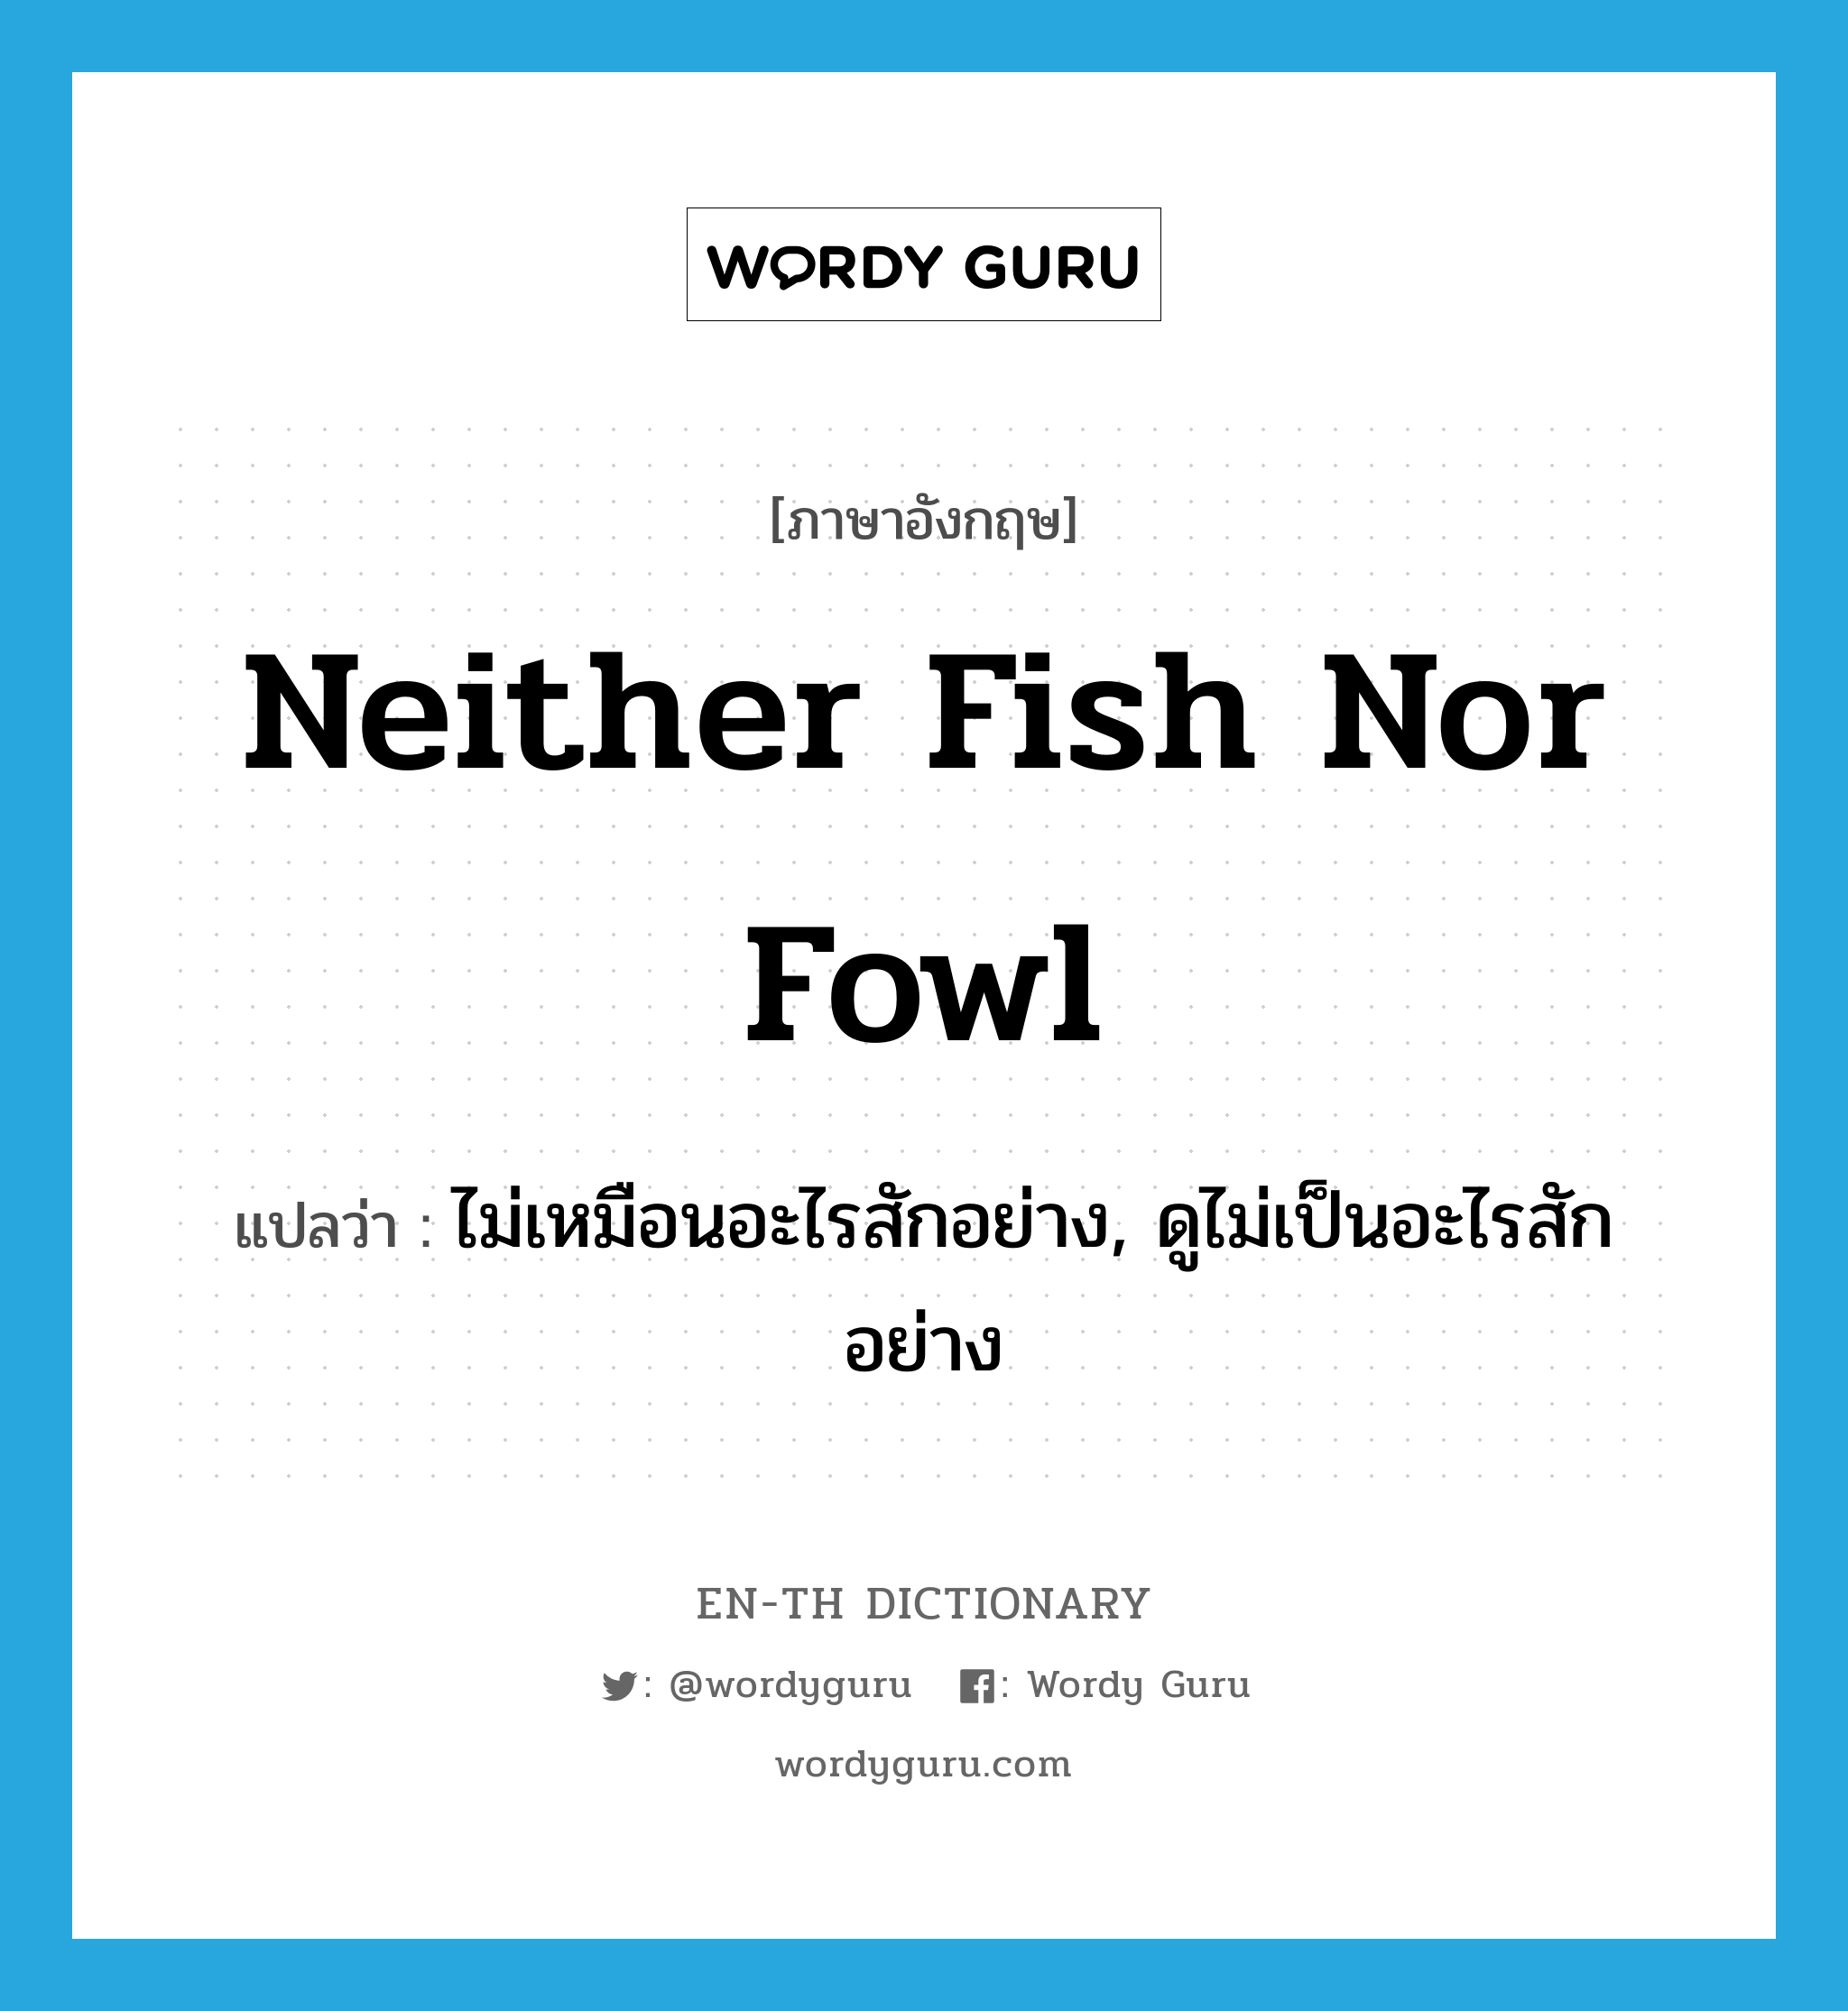 ไม่เหมือนอะไรสักอย่าง, ดูไม่เป็นอะไรสักอย่าง ภาษาอังกฤษ?, คำศัพท์ภาษาอังกฤษ ไม่เหมือนอะไรสักอย่าง, ดูไม่เป็นอะไรสักอย่าง แปลว่า neither fish nor fowl ประเภท IDM หมวด IDM